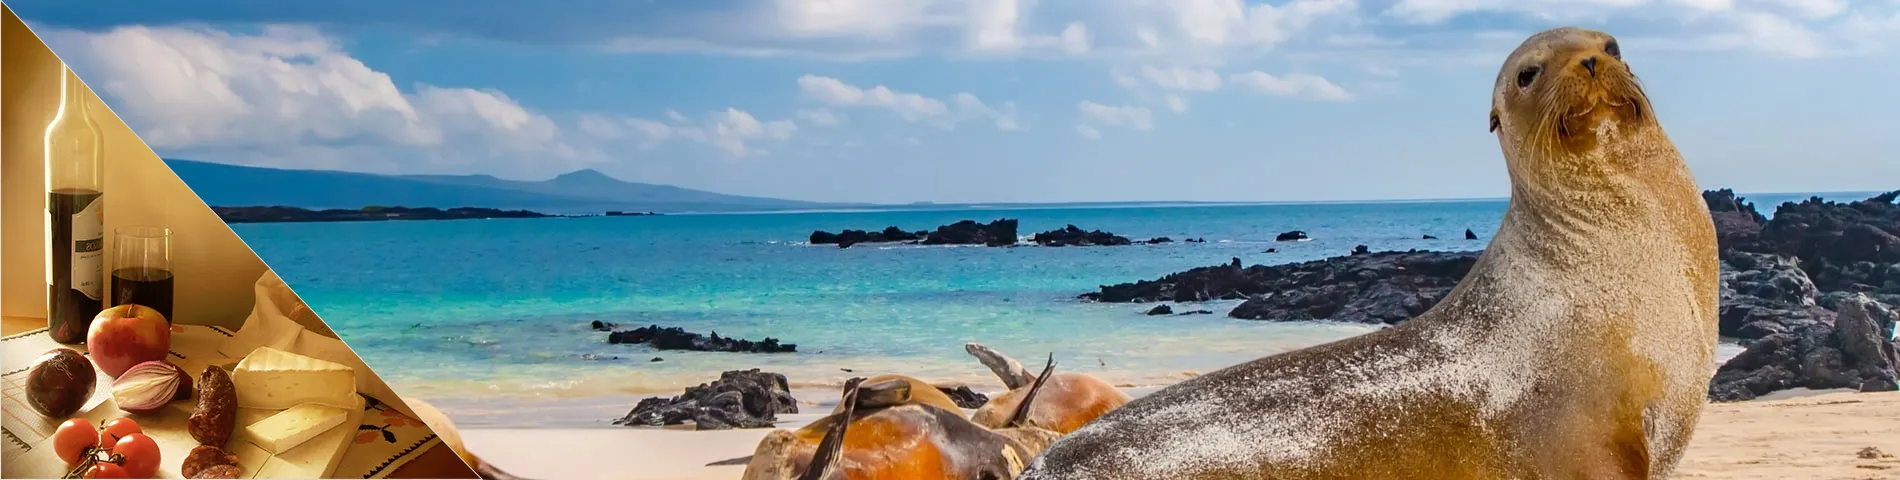 Galapagos-saaret - Espanja & kulttuuri